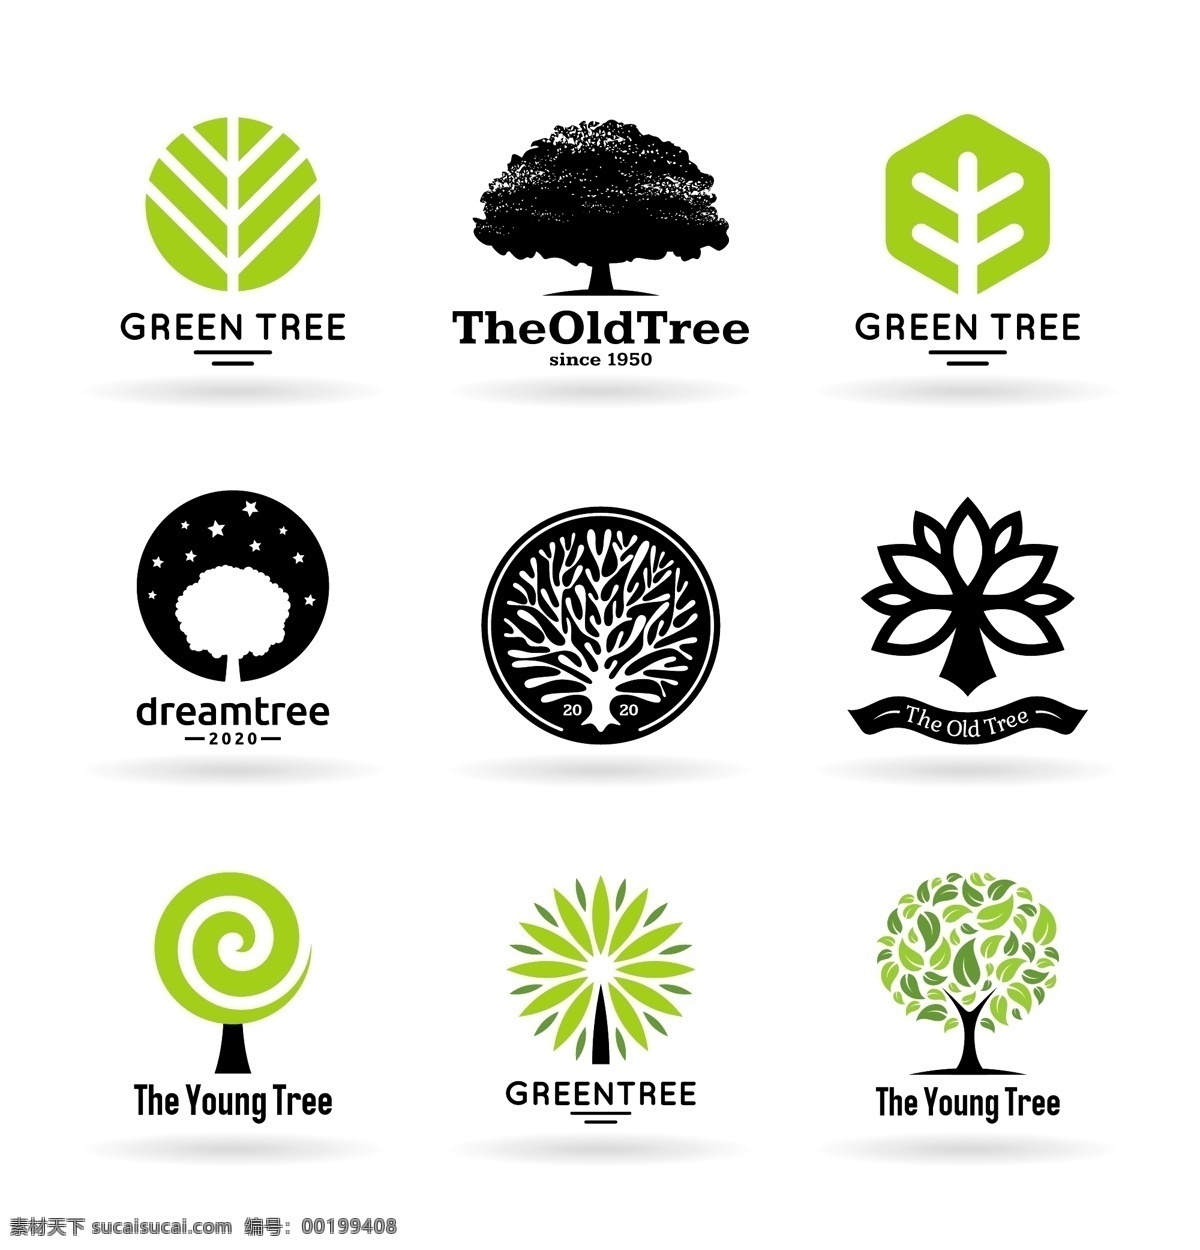 创意 环保 树木 图标 装饰 矢量素材 设计素材 背景素材